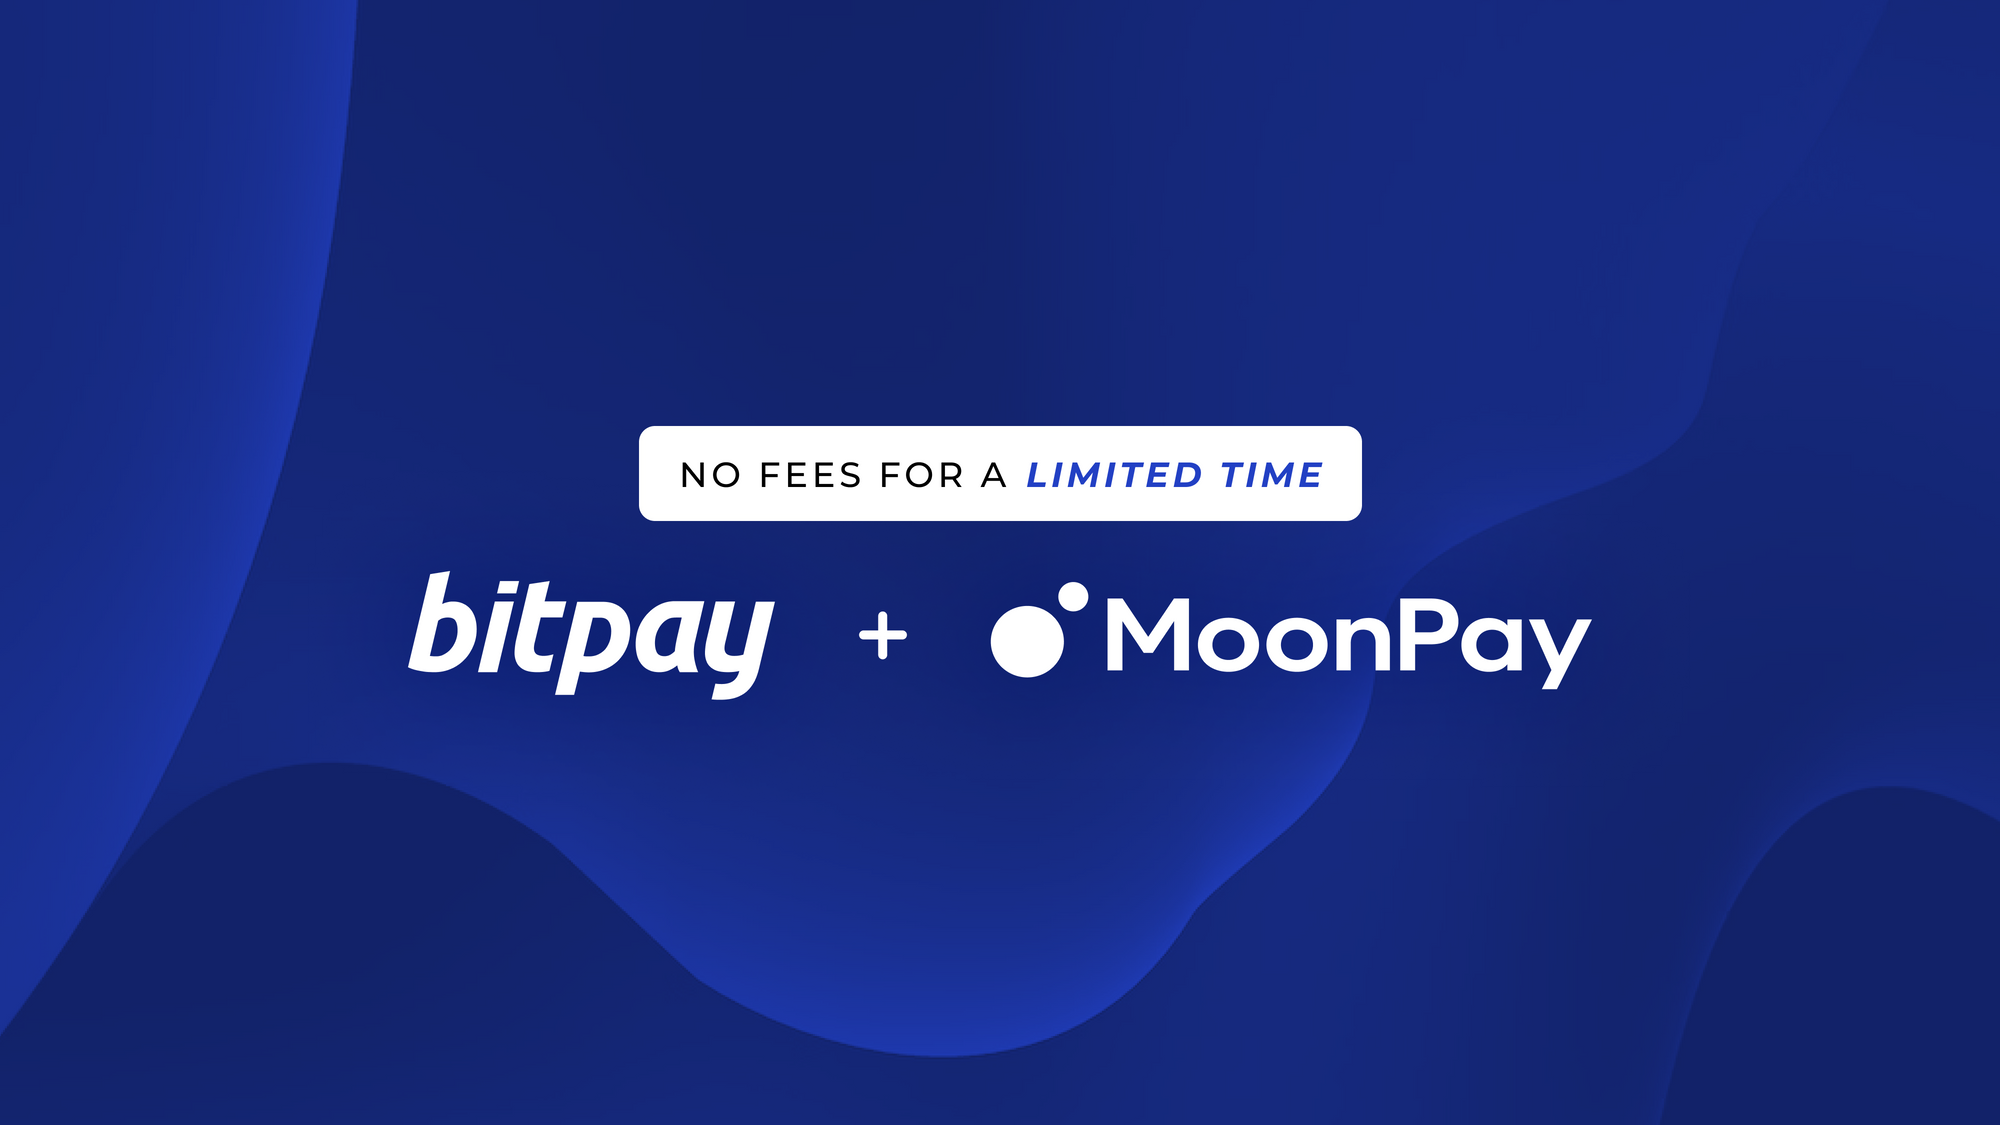 BitPay Partners با MoonPay - کریپتو بدون کارمزد برای مدت محدود بخرید